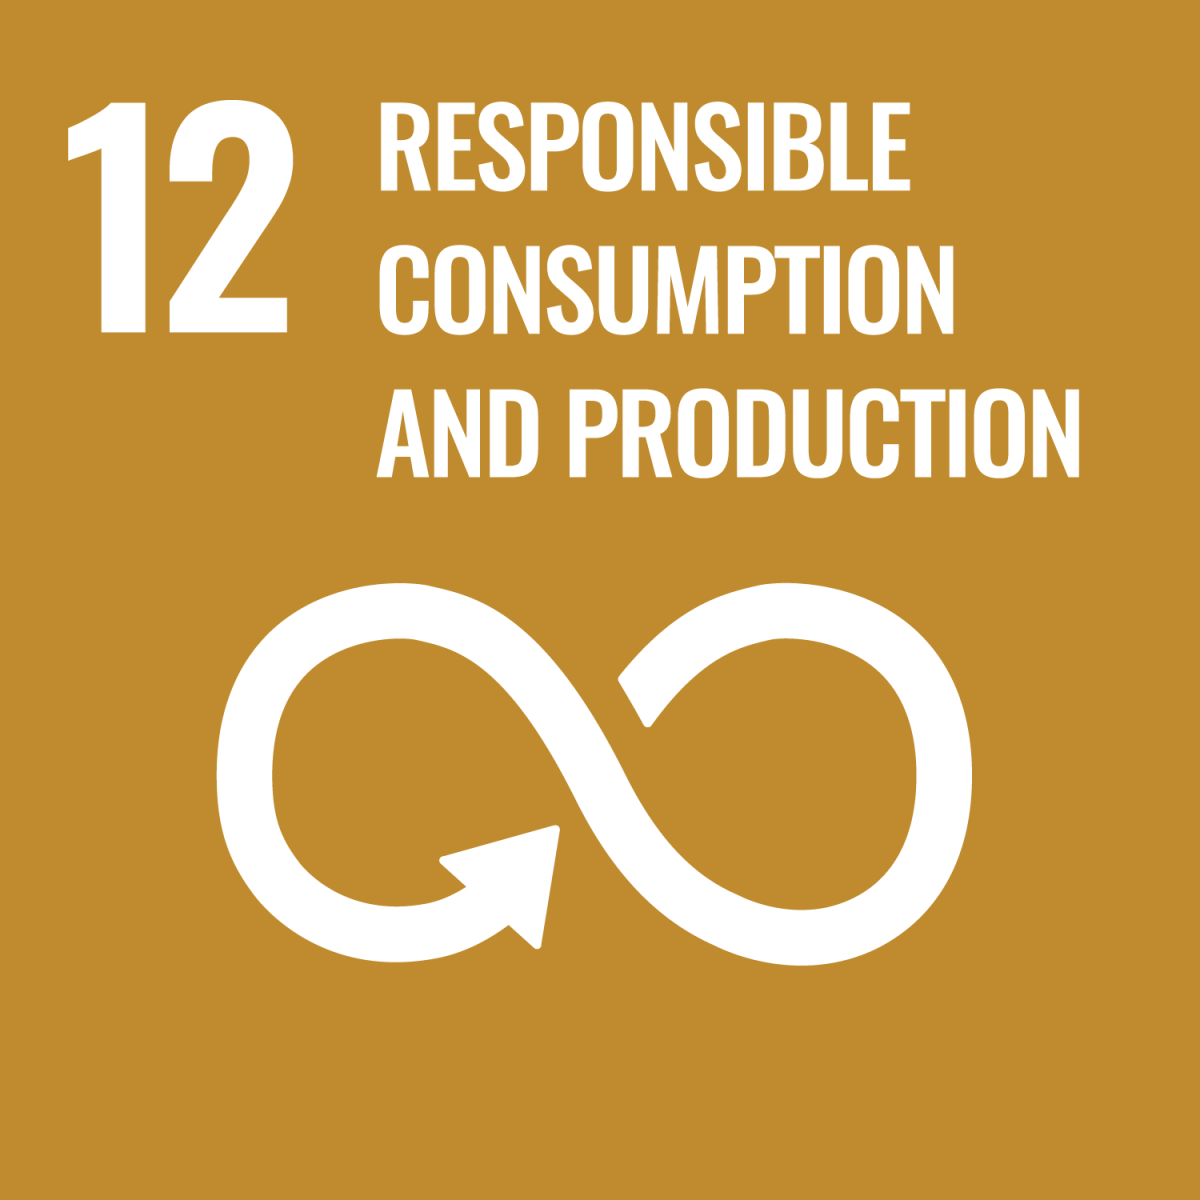 Shows UN SDG 12 Responsible Consumption and Production